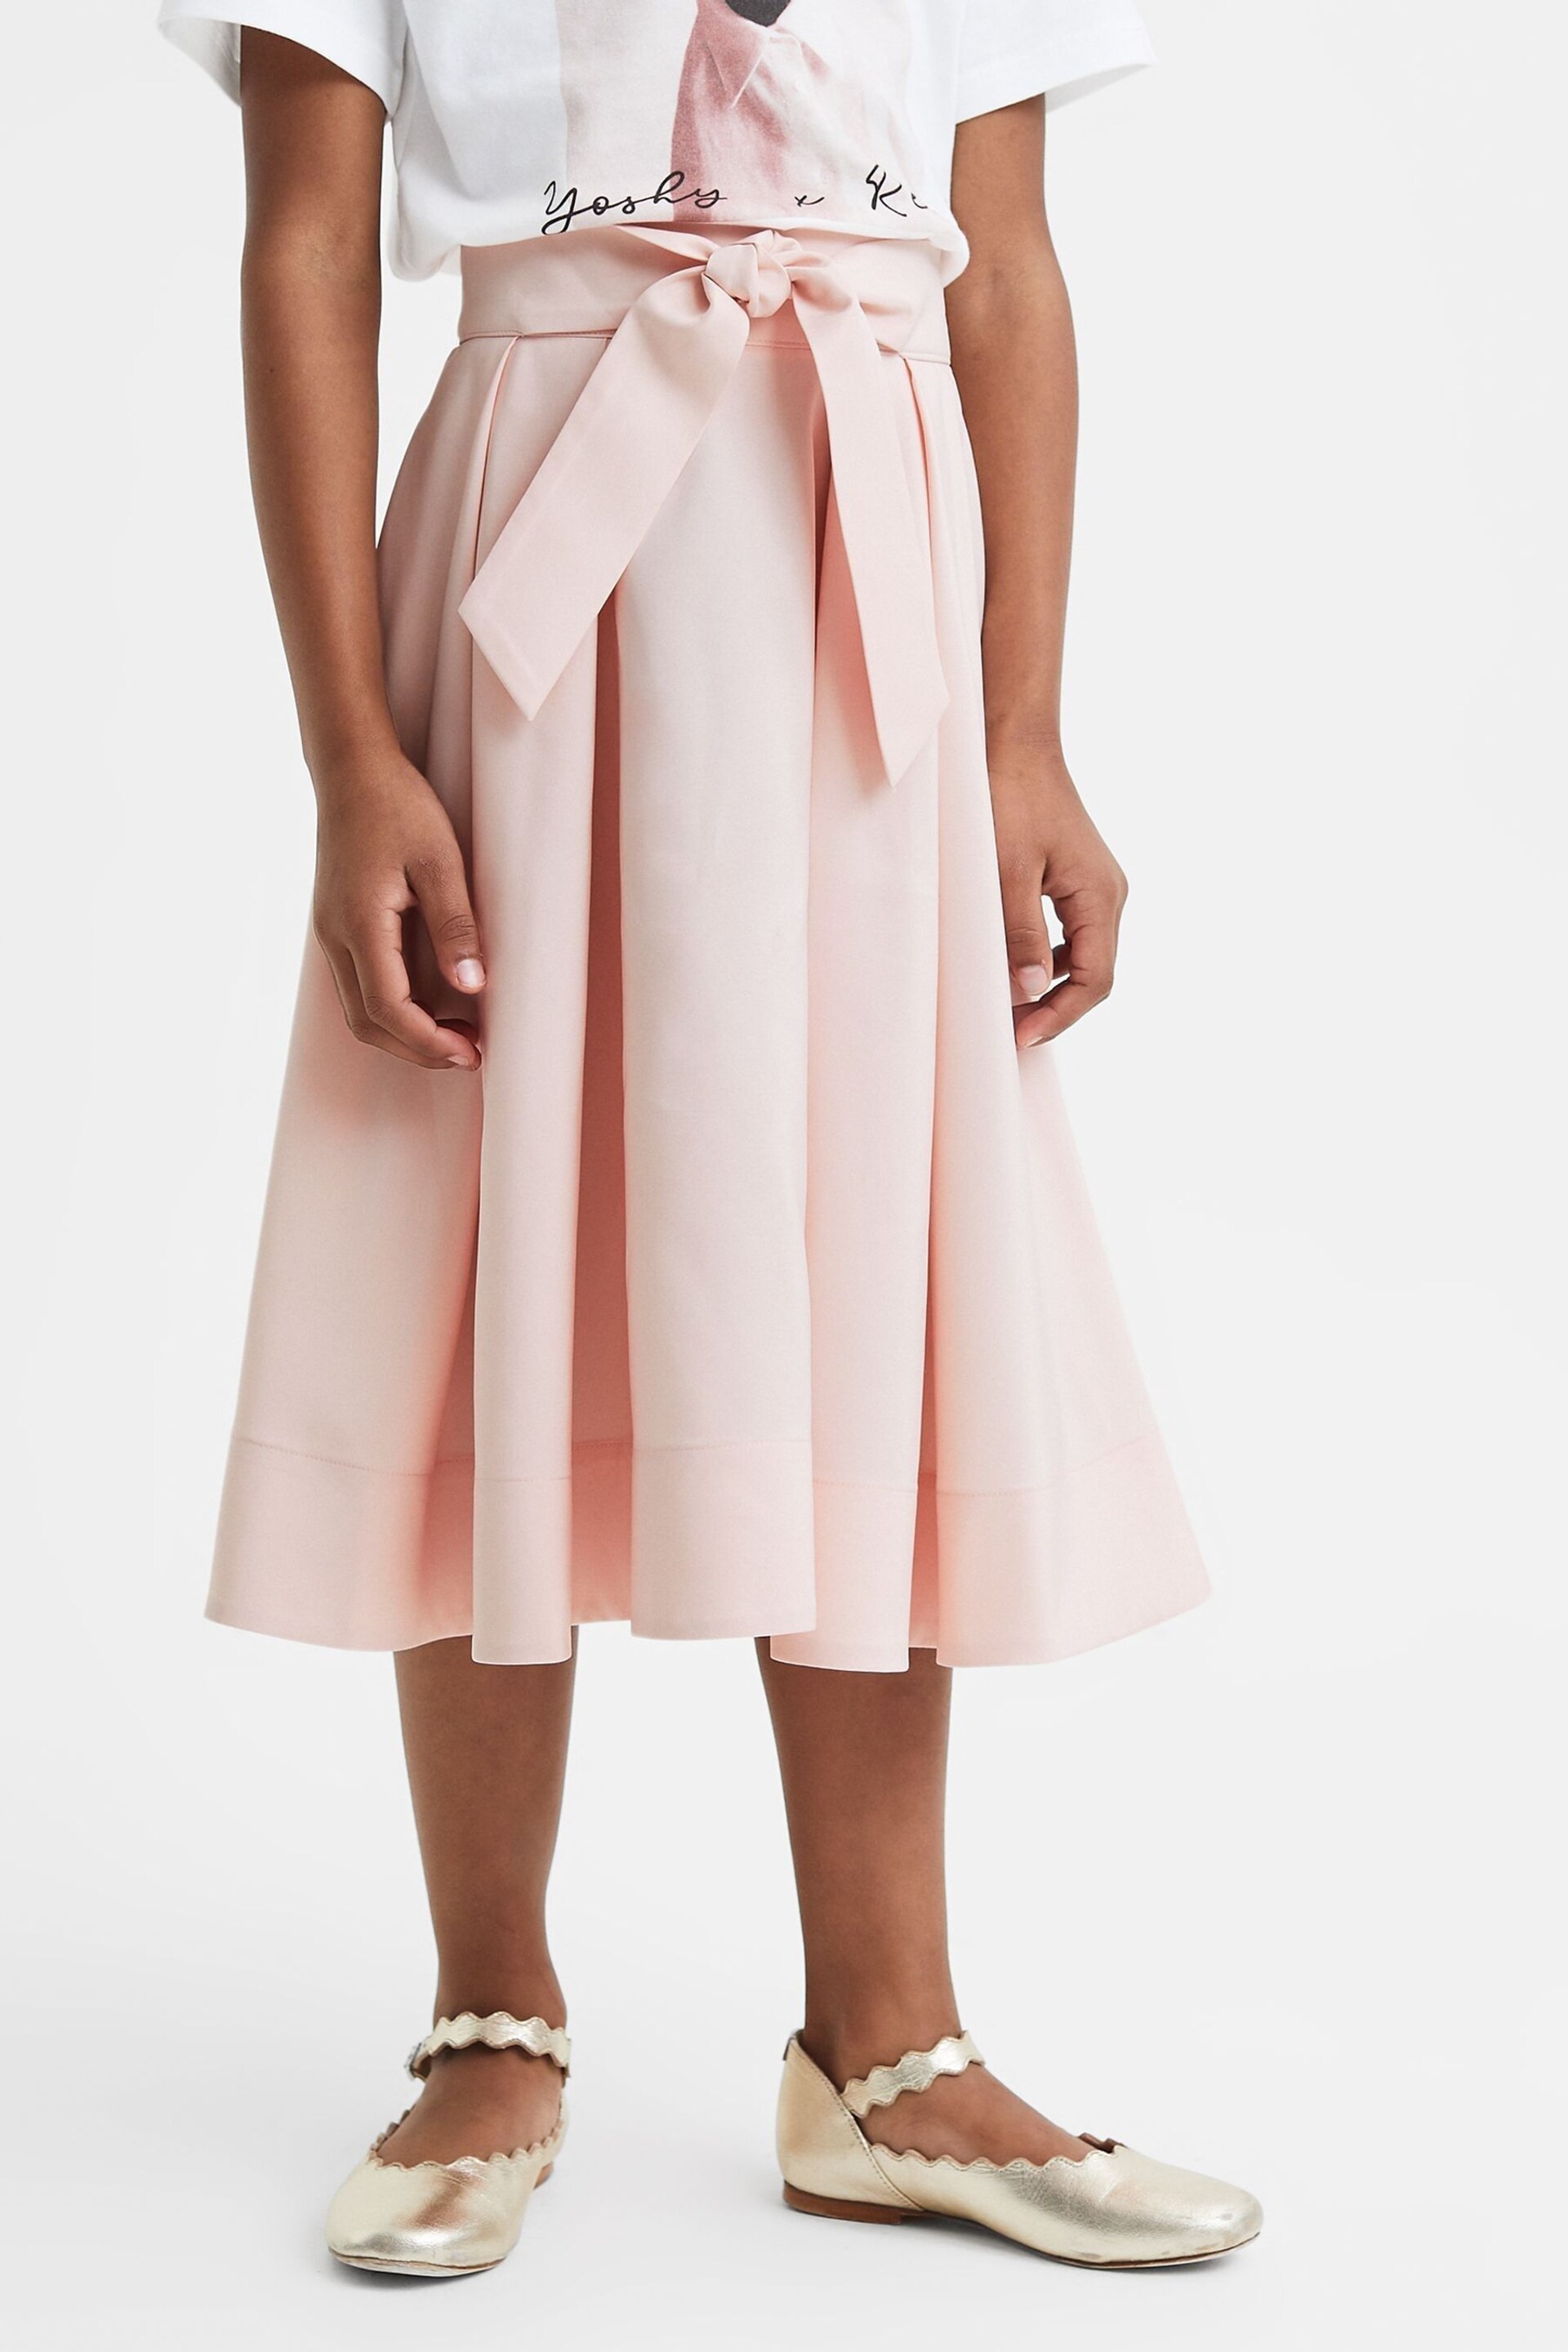 Reiss Pink Garcia Senior Pleated Belted Taffeta Midi Skirt - Image 1 of 6